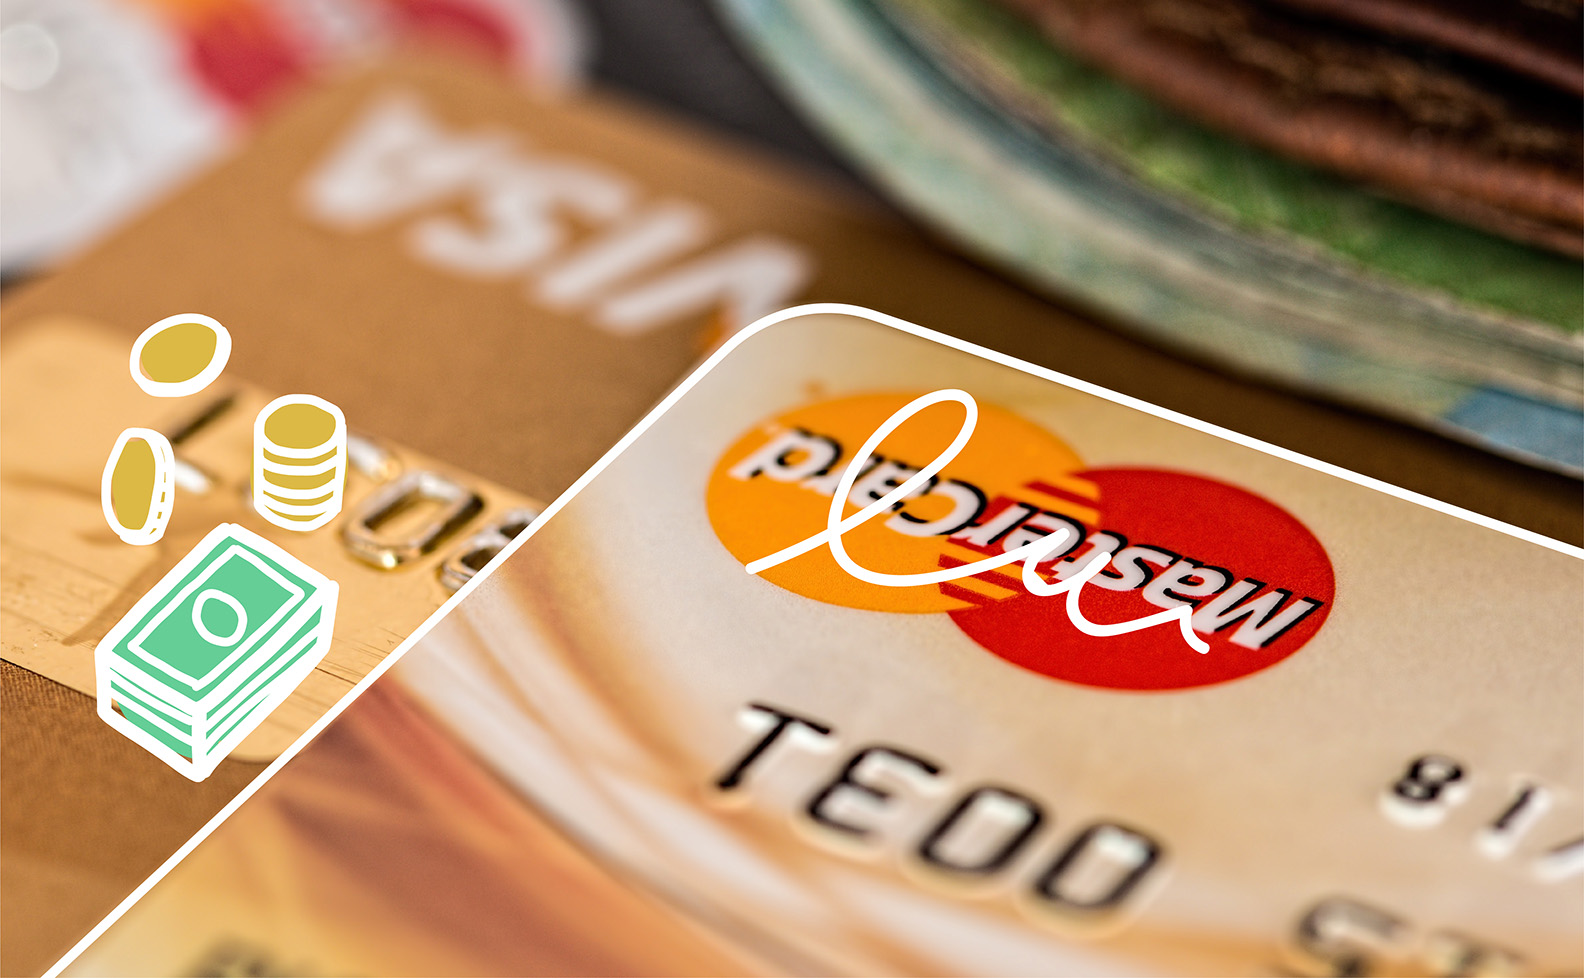 kartu kredit dan kartu debit